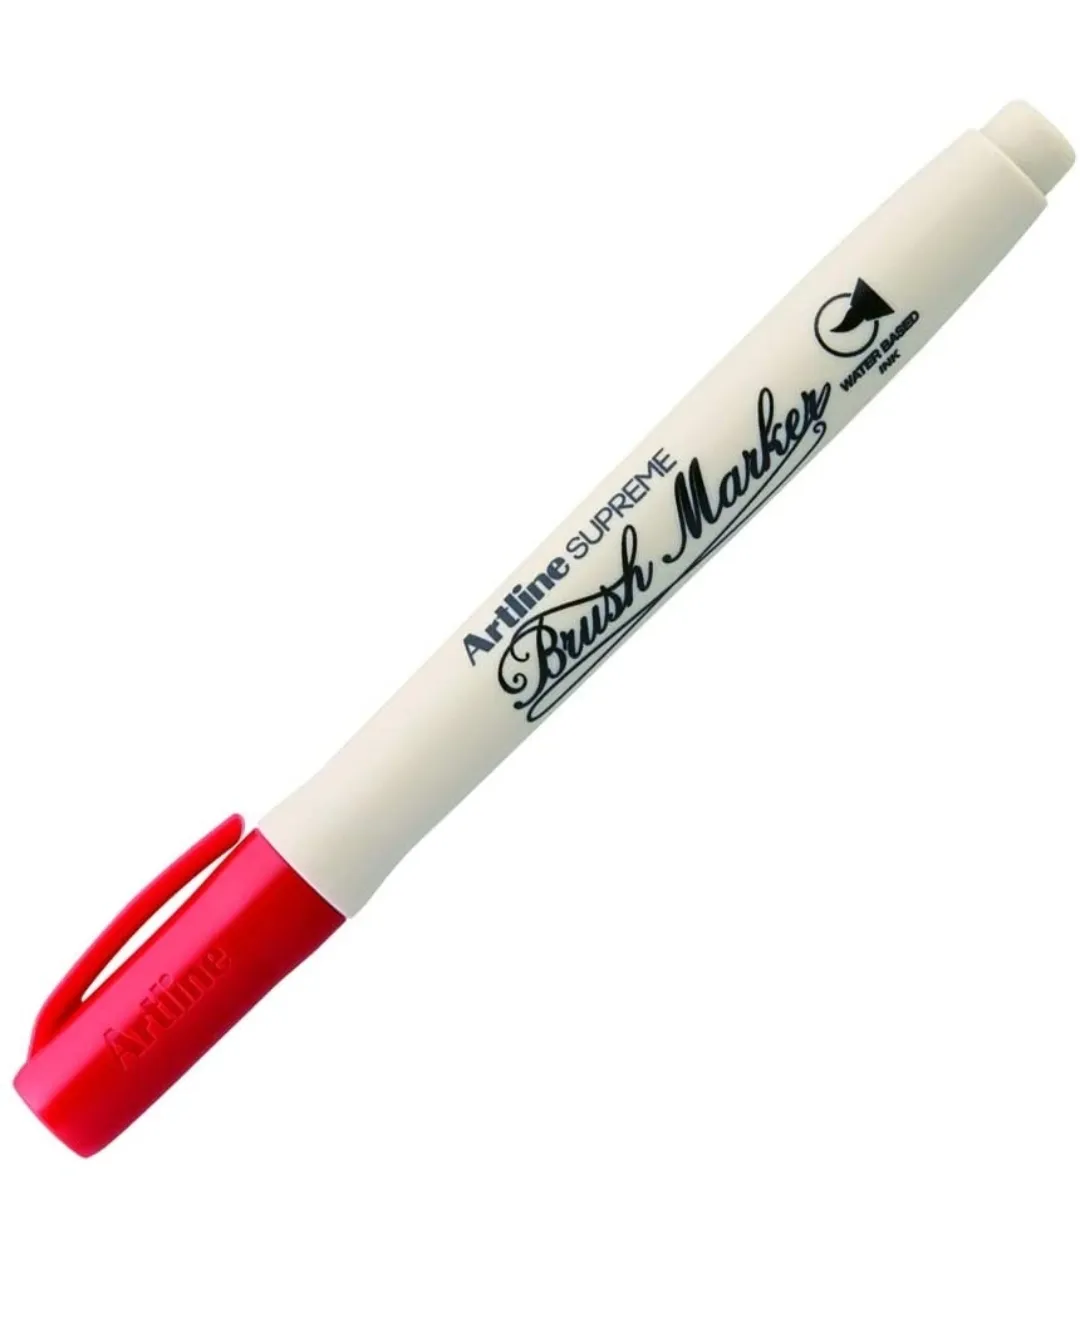 Artline Supreme Brush Marker Pen Red Colour Marker Pack of 1